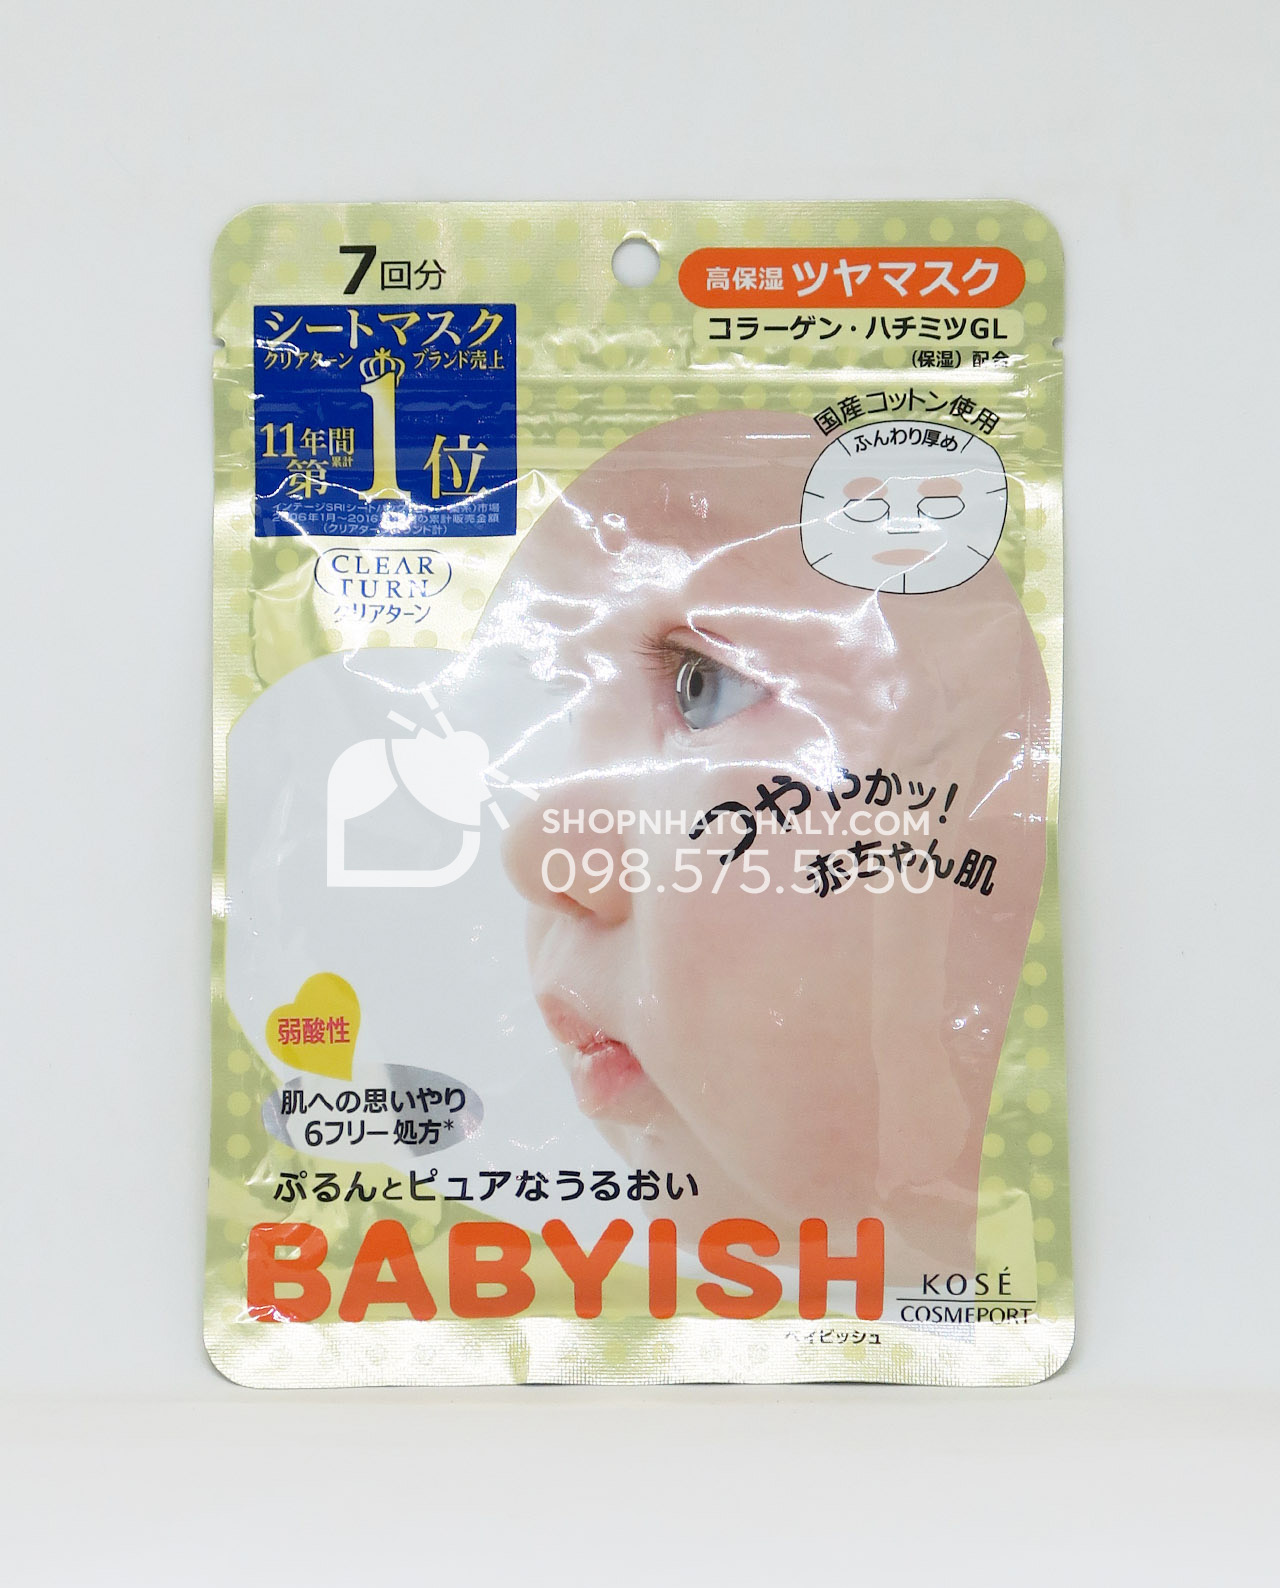 Mặt nạ Babyish của Nhật màu vàng do có độ ẩm cao nên ít được lựa chọn hơn, phù hợp với da thiên khô, da khô và da lão hoá dùng để chăm sóc tập trung